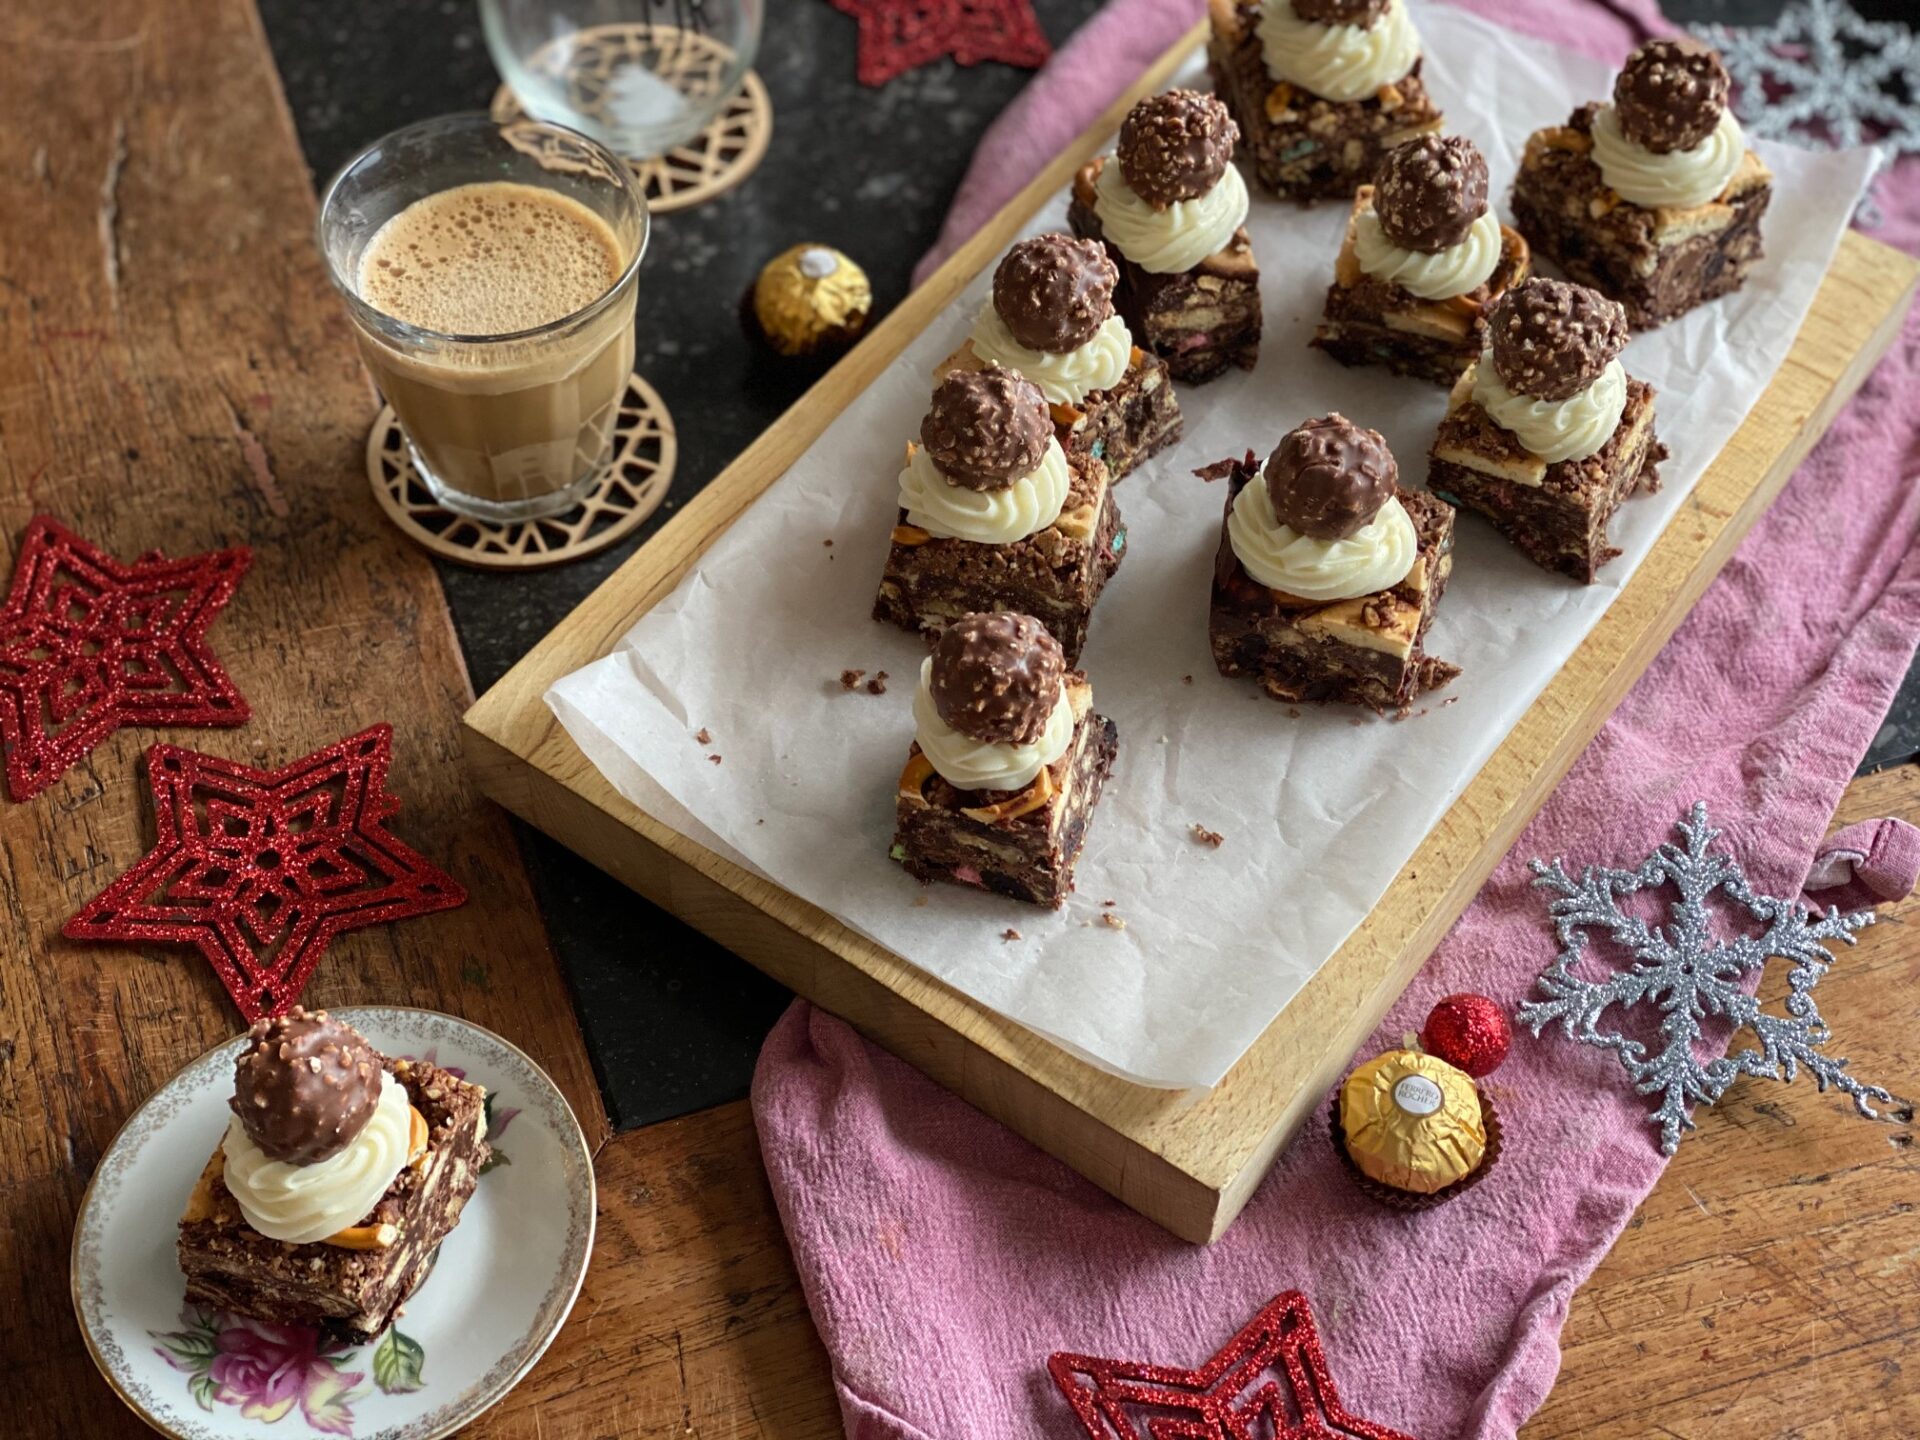 Kerst rocky road met Ferrero Rocher topping - Foodblog Foodinista recepten